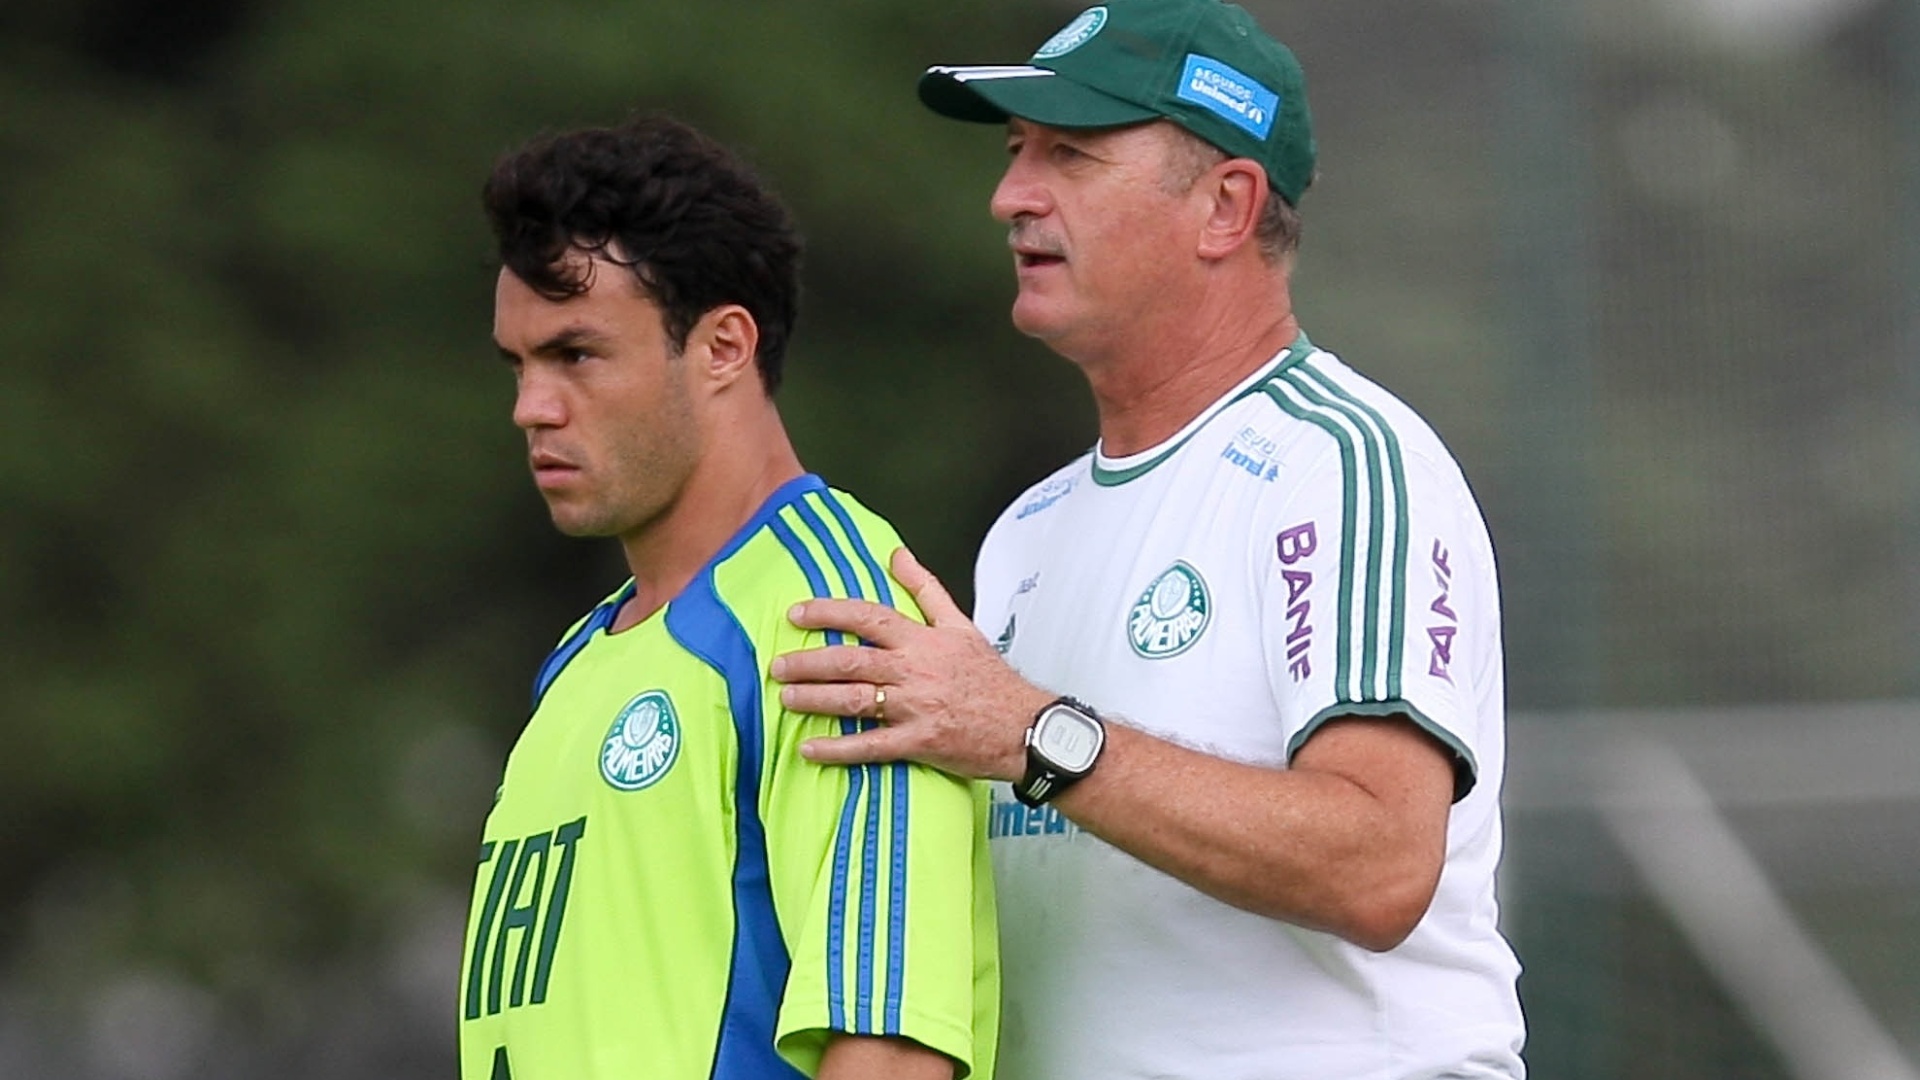 Felipão e Kléber durante treino do Palmeiras